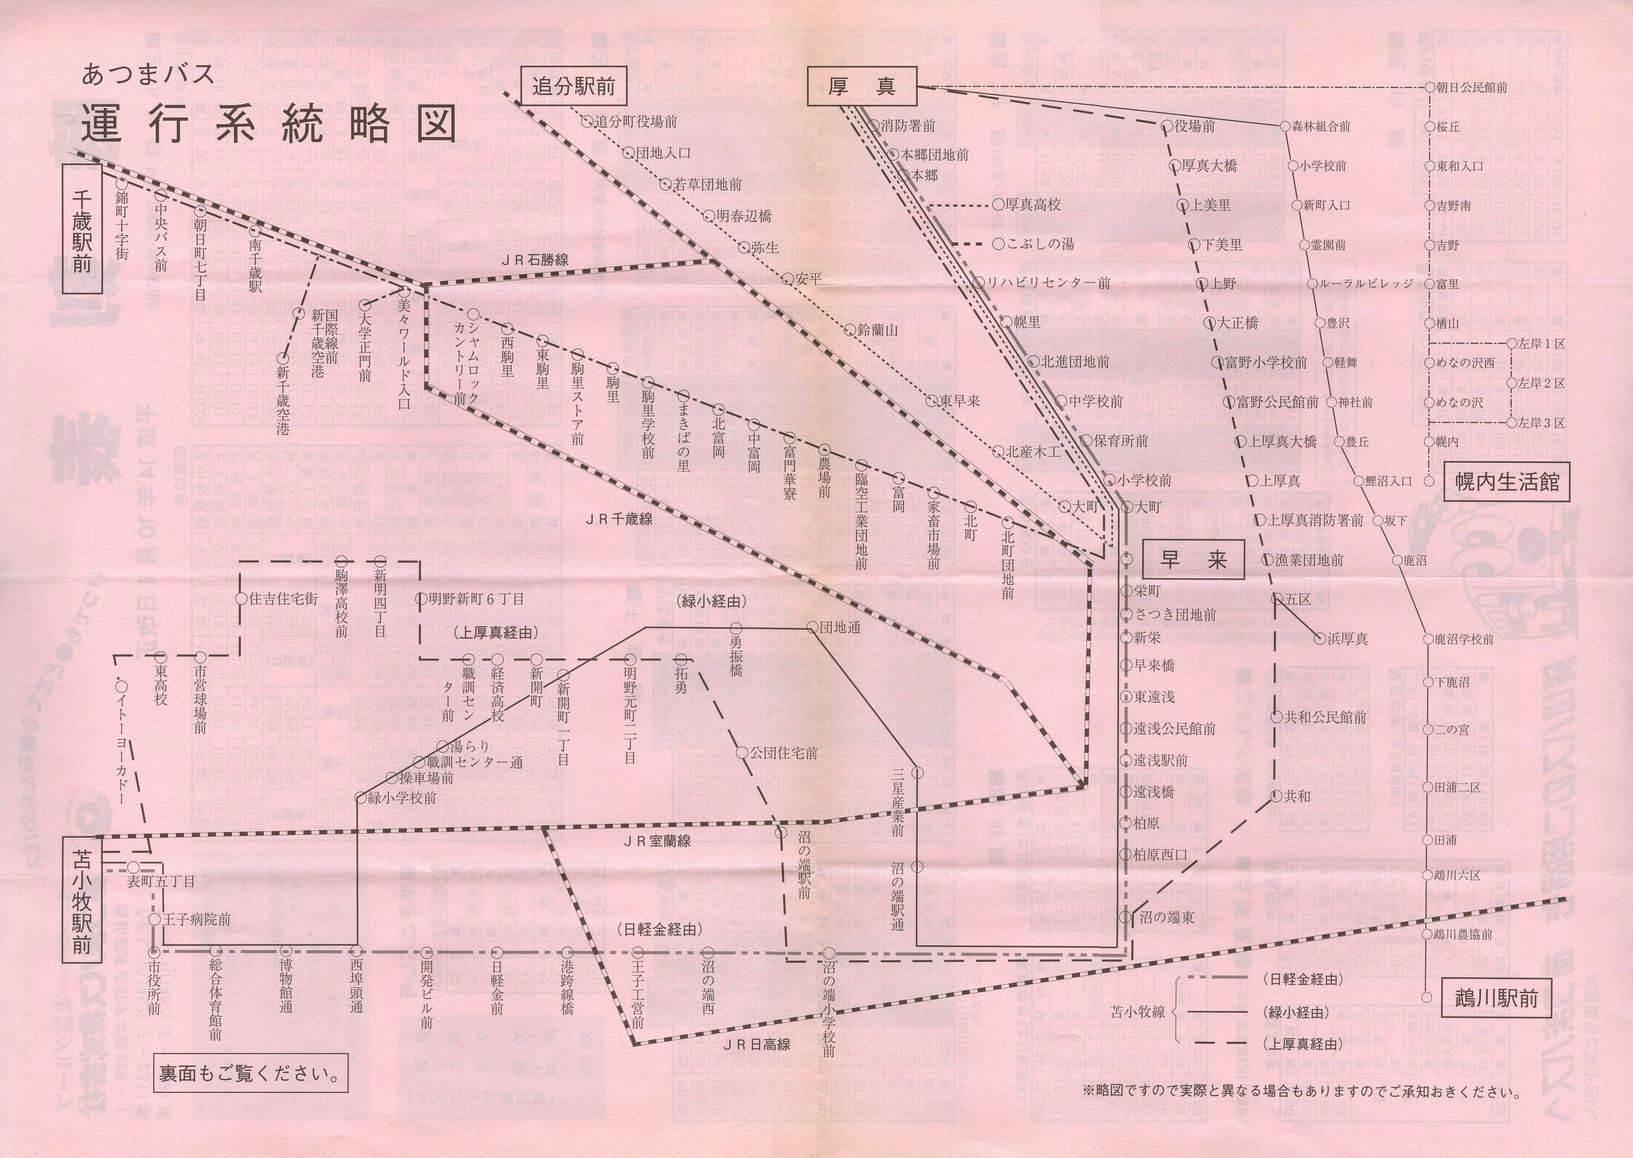 2002-10-01改正_あつまバス_時刻表裏面